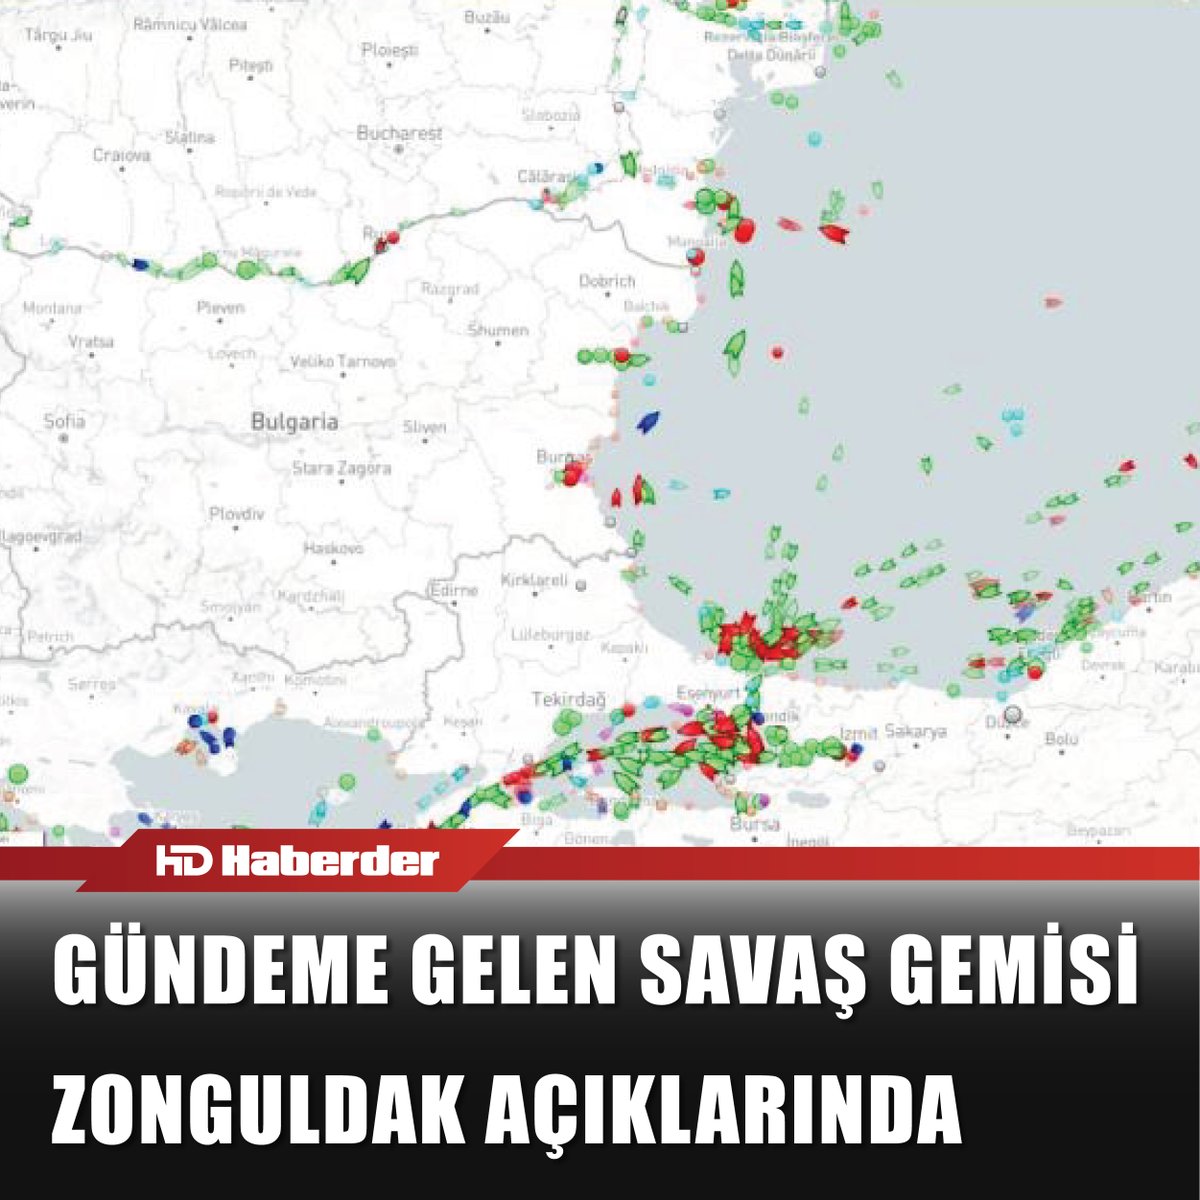 #Kahramanmaraş'ta yaşanan 7.7 ve 7.6'lık #depremlere sebebiyet verdiği iddialarıyla #sosyalmedya da #gündem olan #ABD'ye ait #USSNitze #savaşgemisi, #Zonguldak-#Ereğli açıklarına #demir attı.